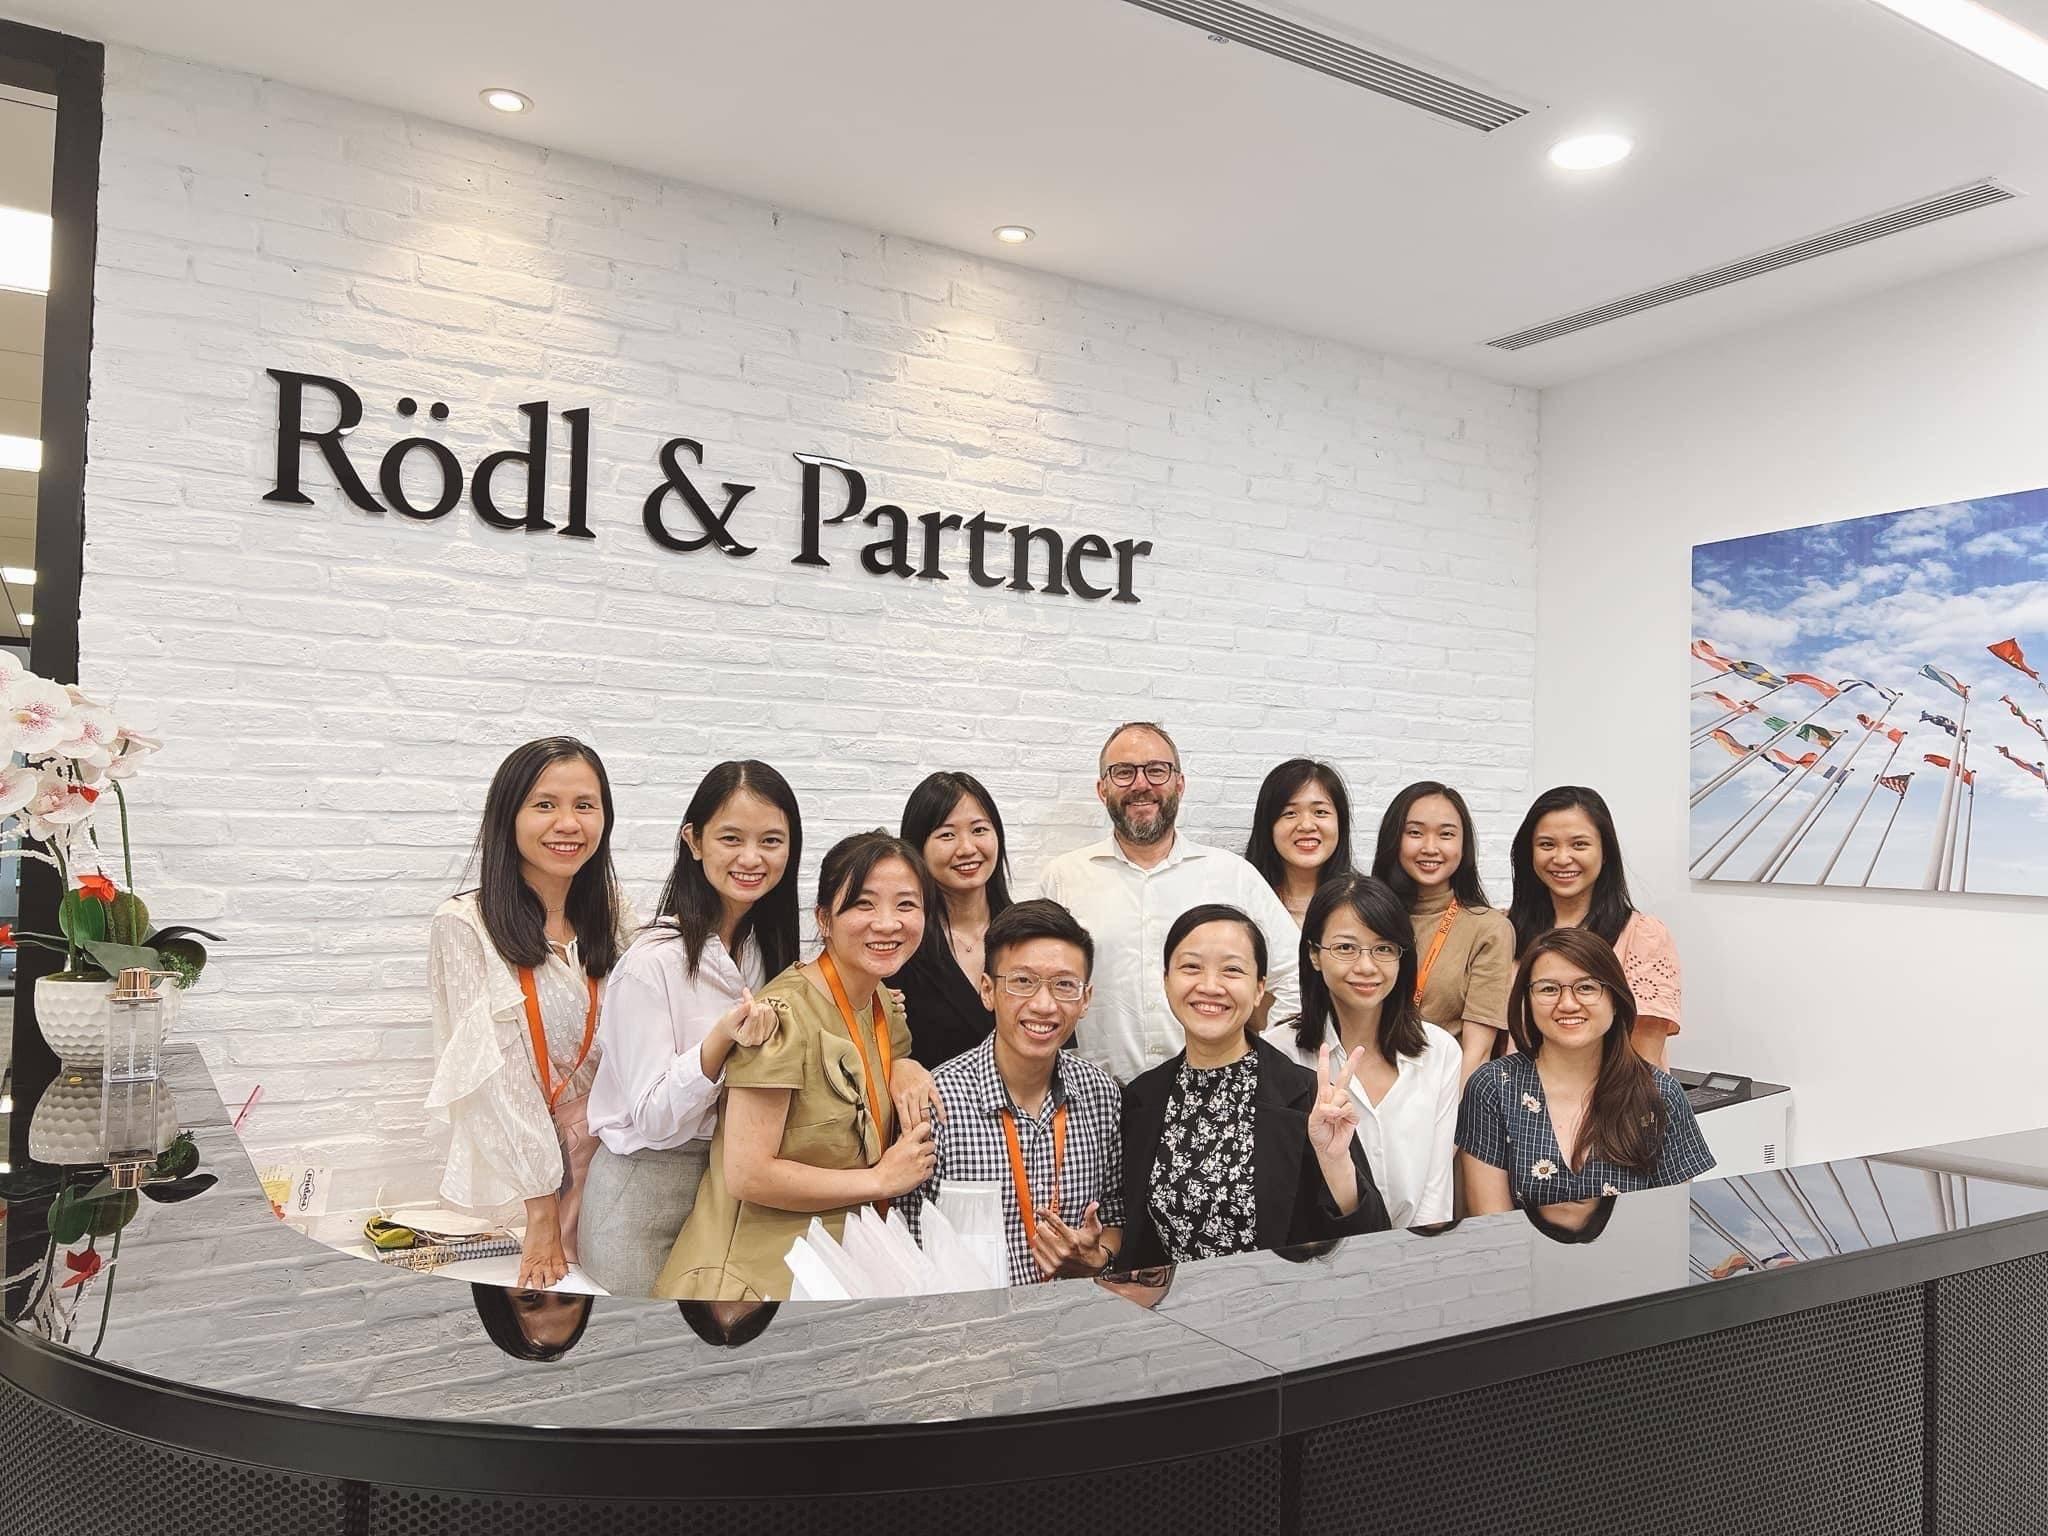 Roedl & Partner Vietnam